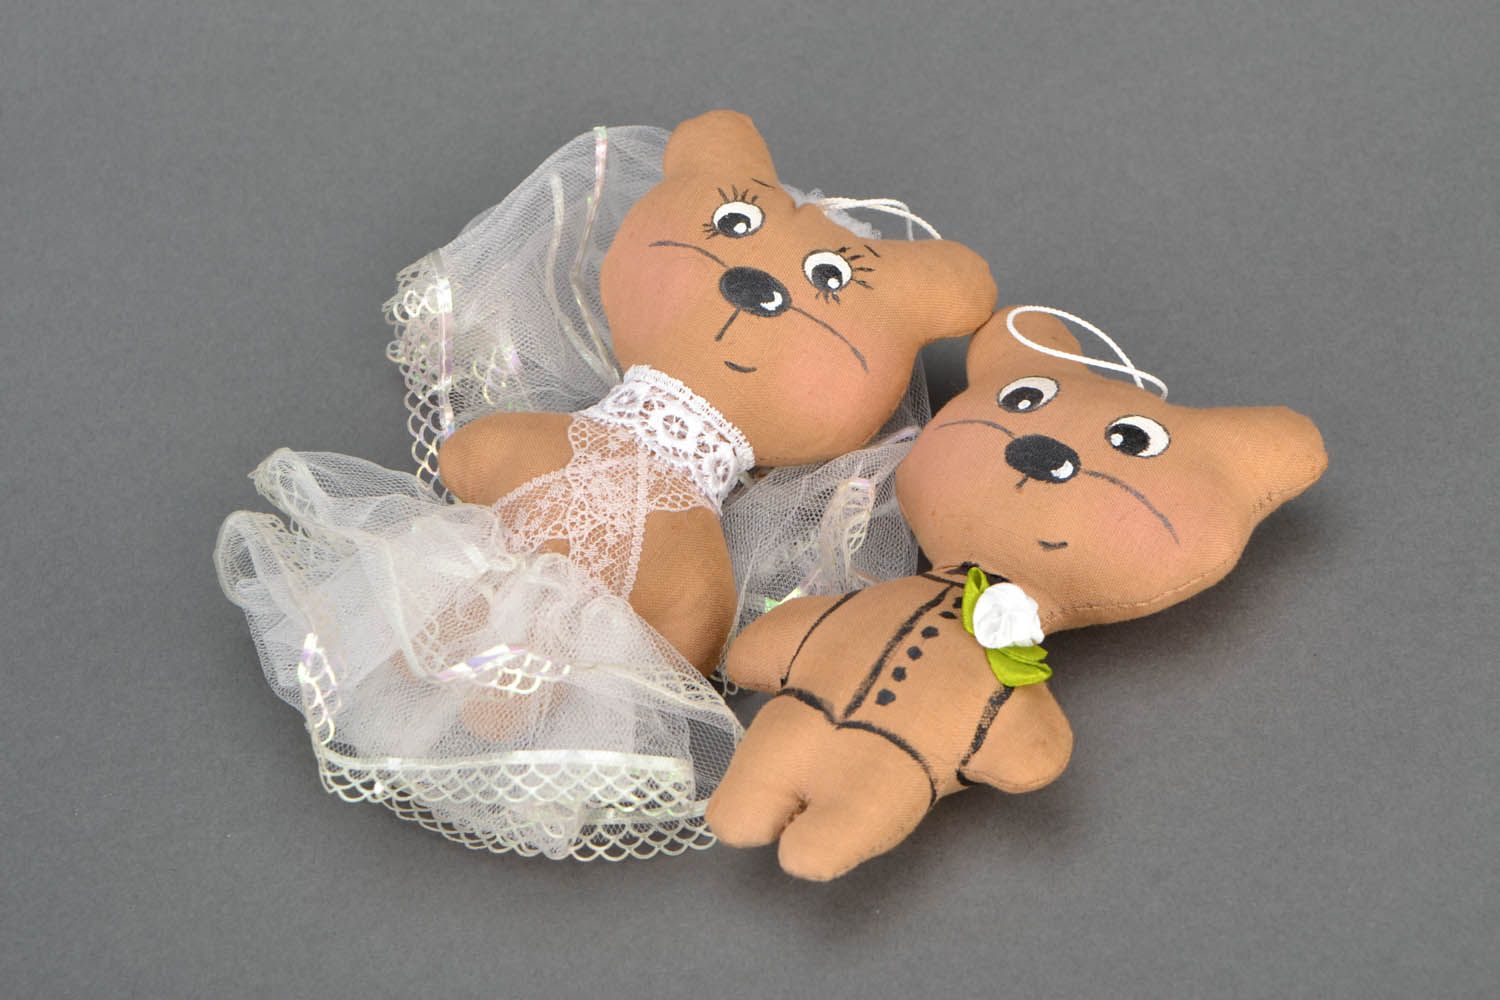 Textil Spielzeug für Hochzeit Neuvermählte foto 3